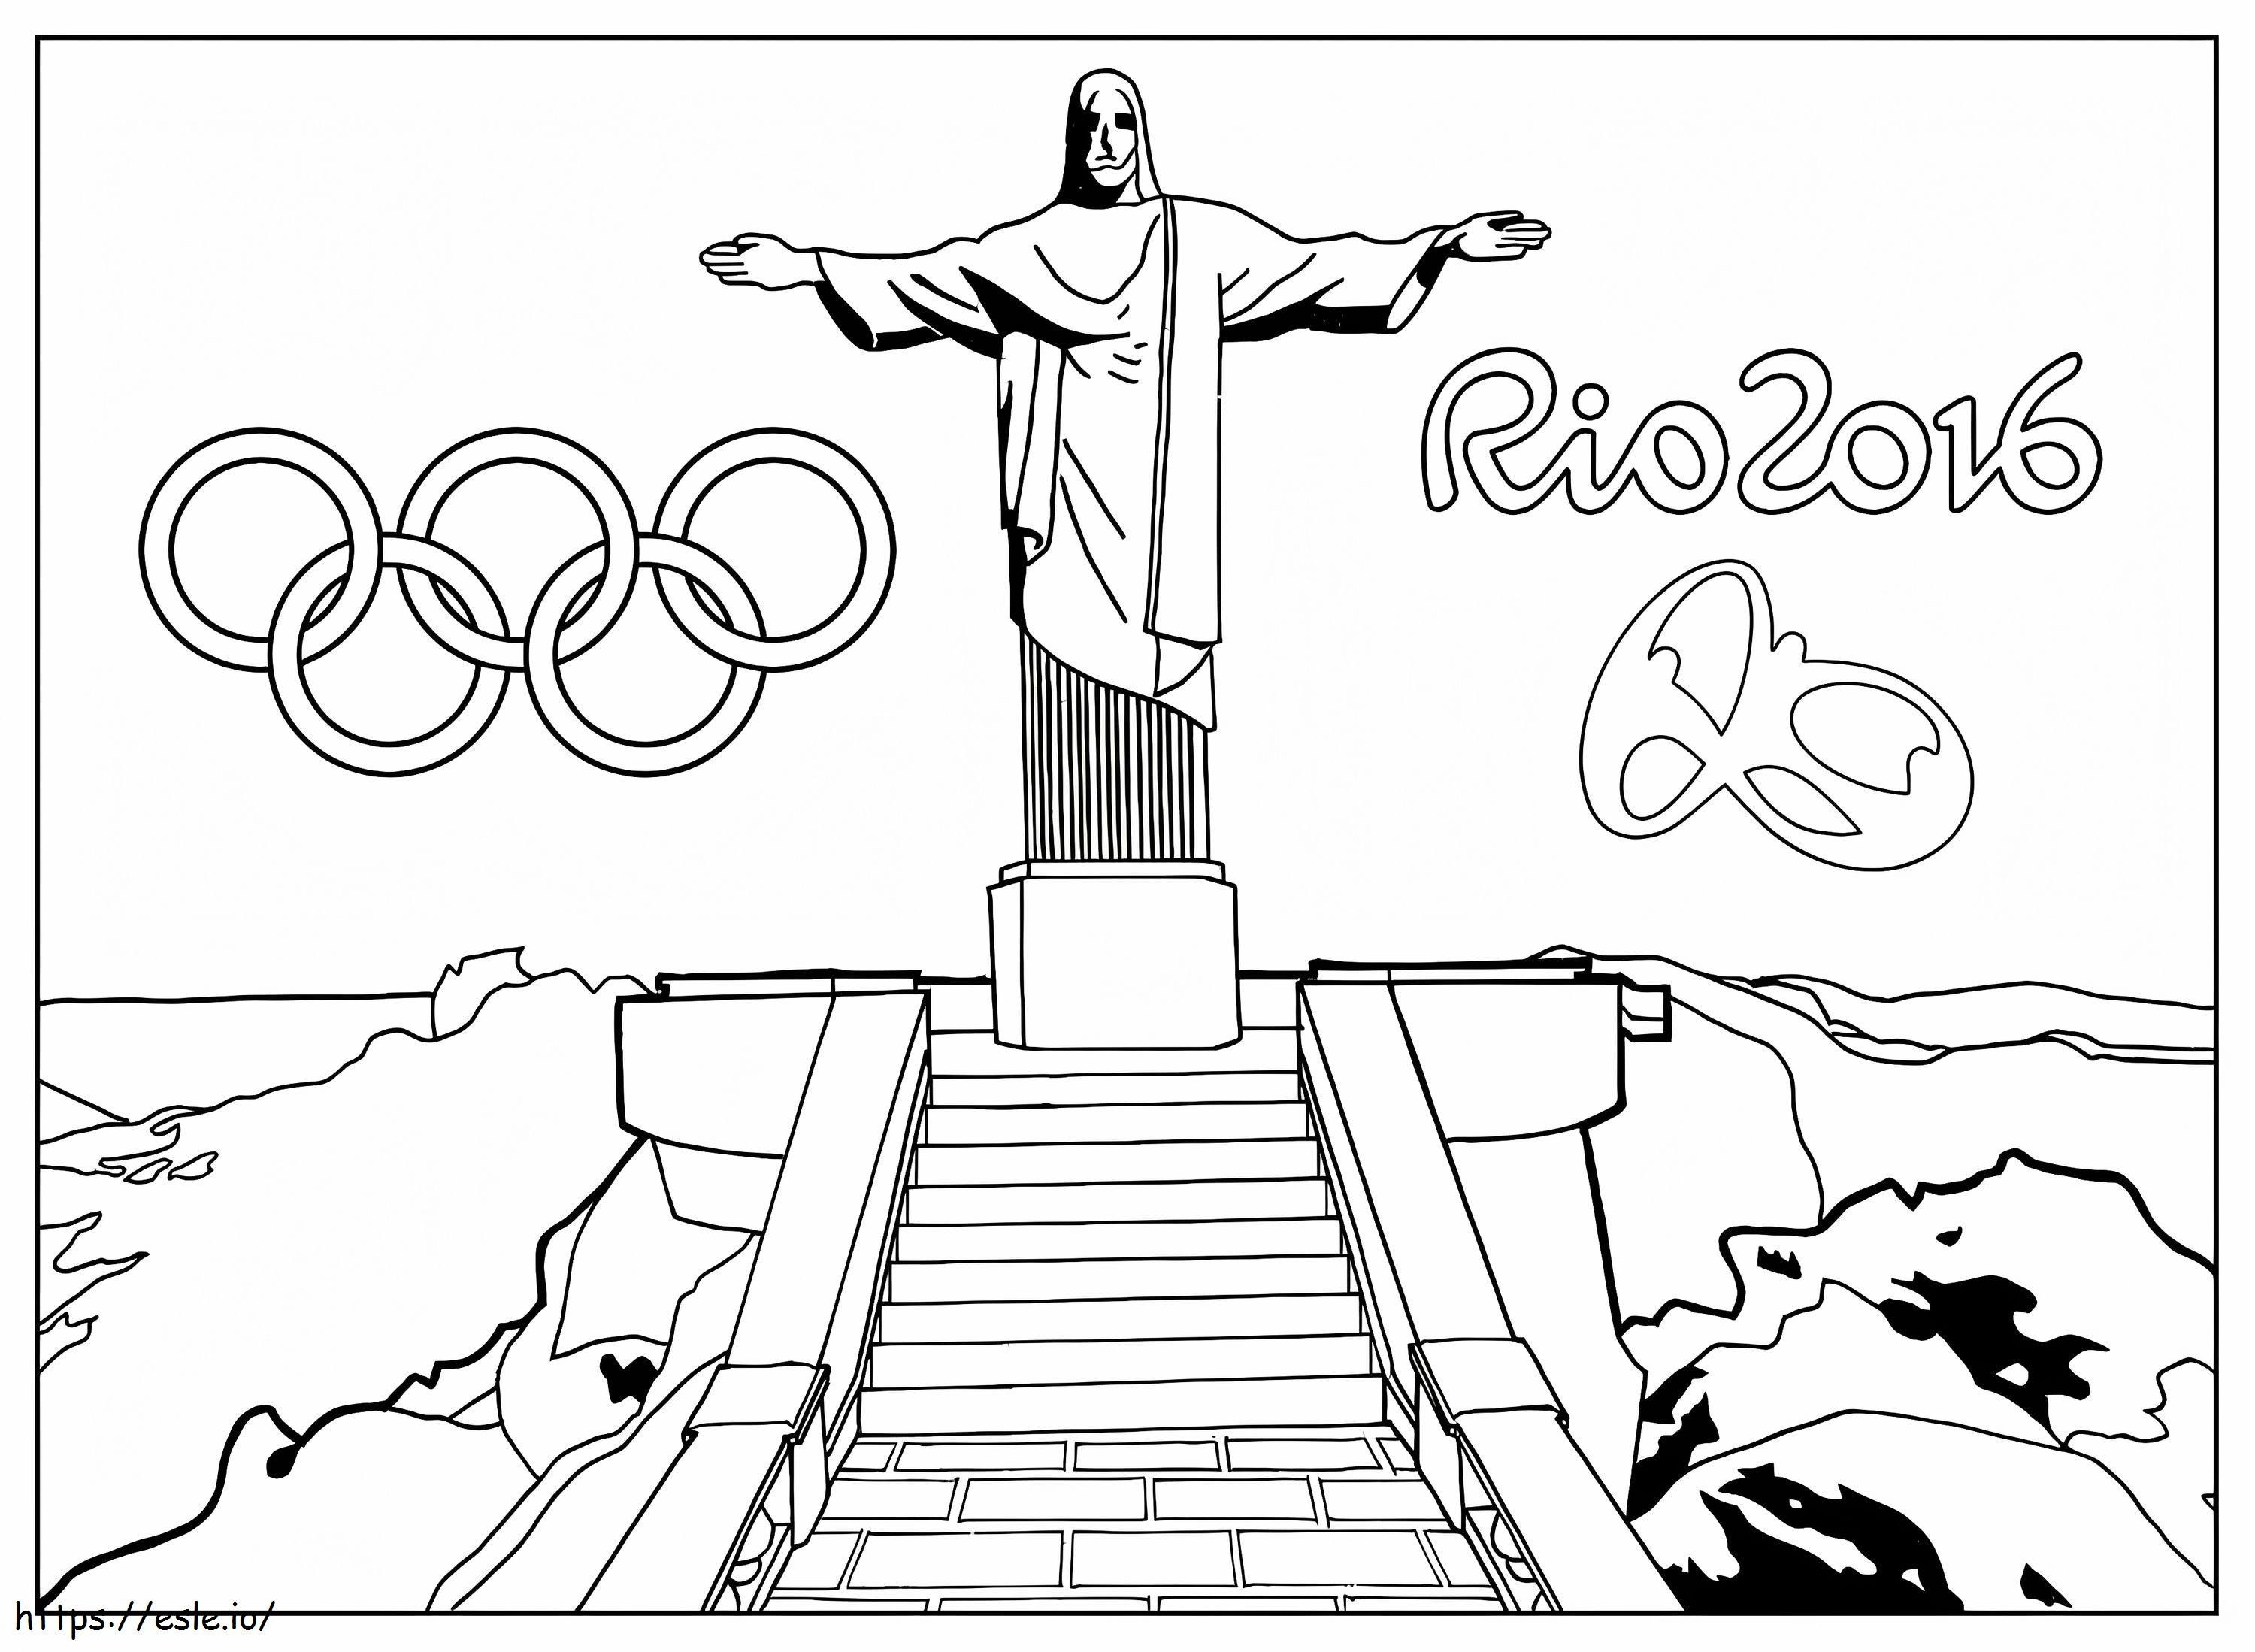 Rio 2016 kolorowanka